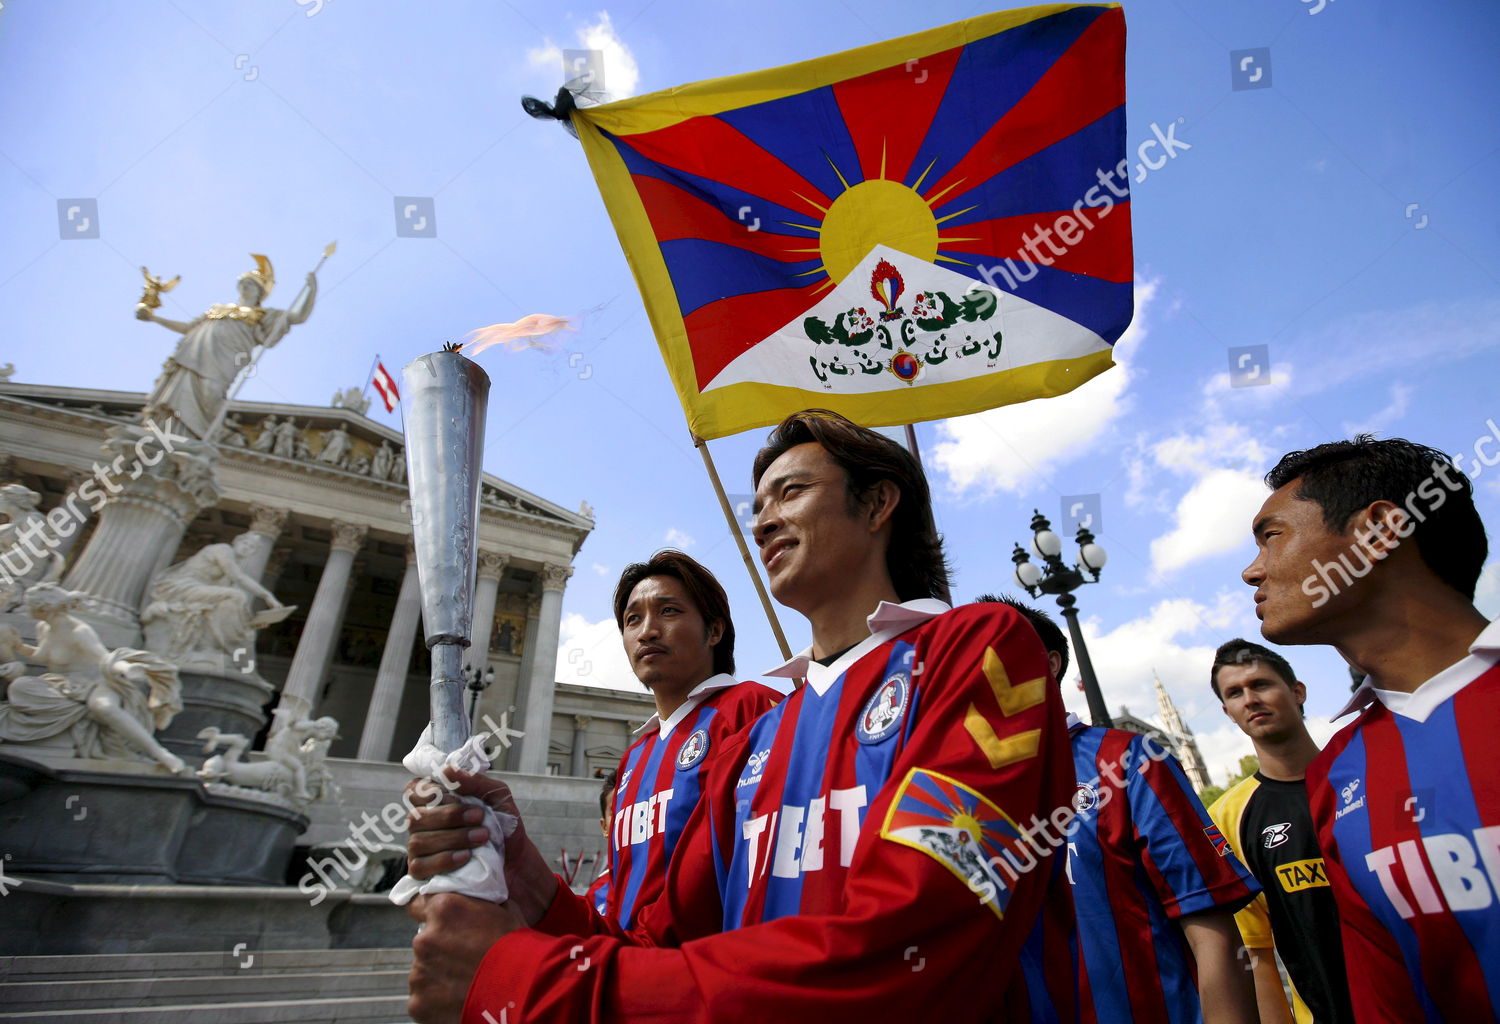 tibet national football team jersey